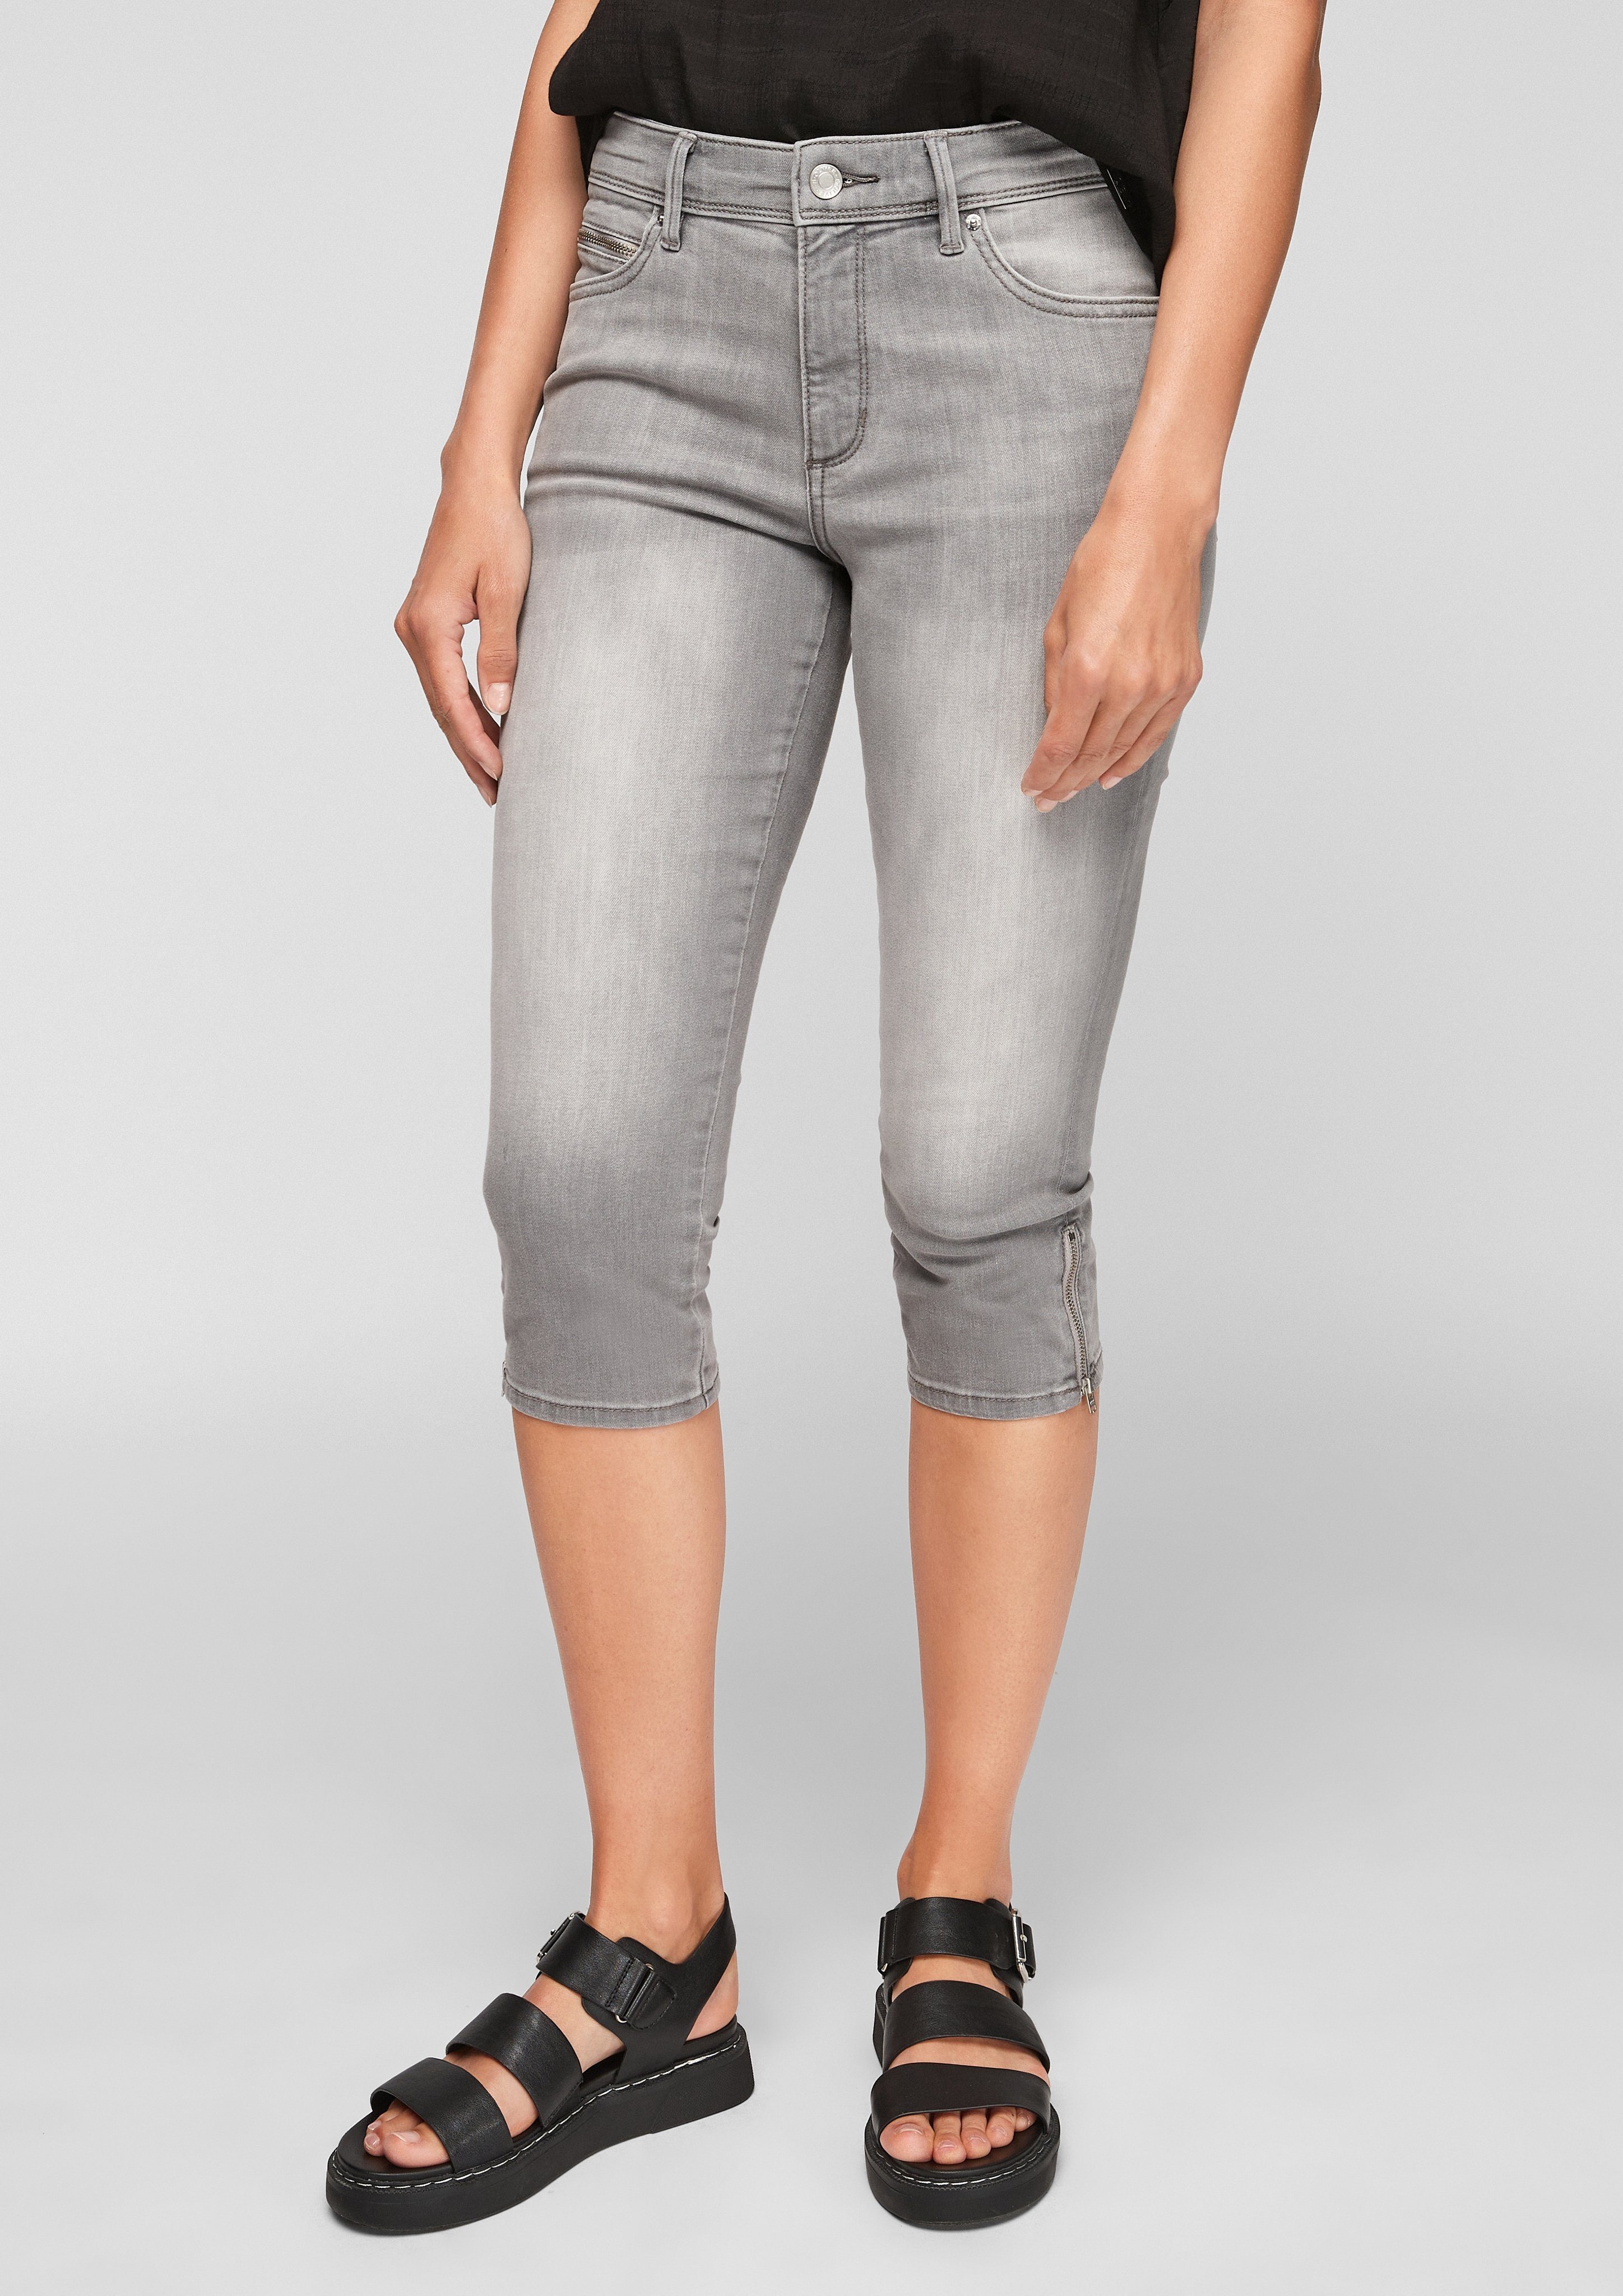 s.Oliver 7/8-Jeans »Slim Fit: Capri aus Denim« Waschung, Leder-Patch,  Reißverschluss online kaufen | OTTO